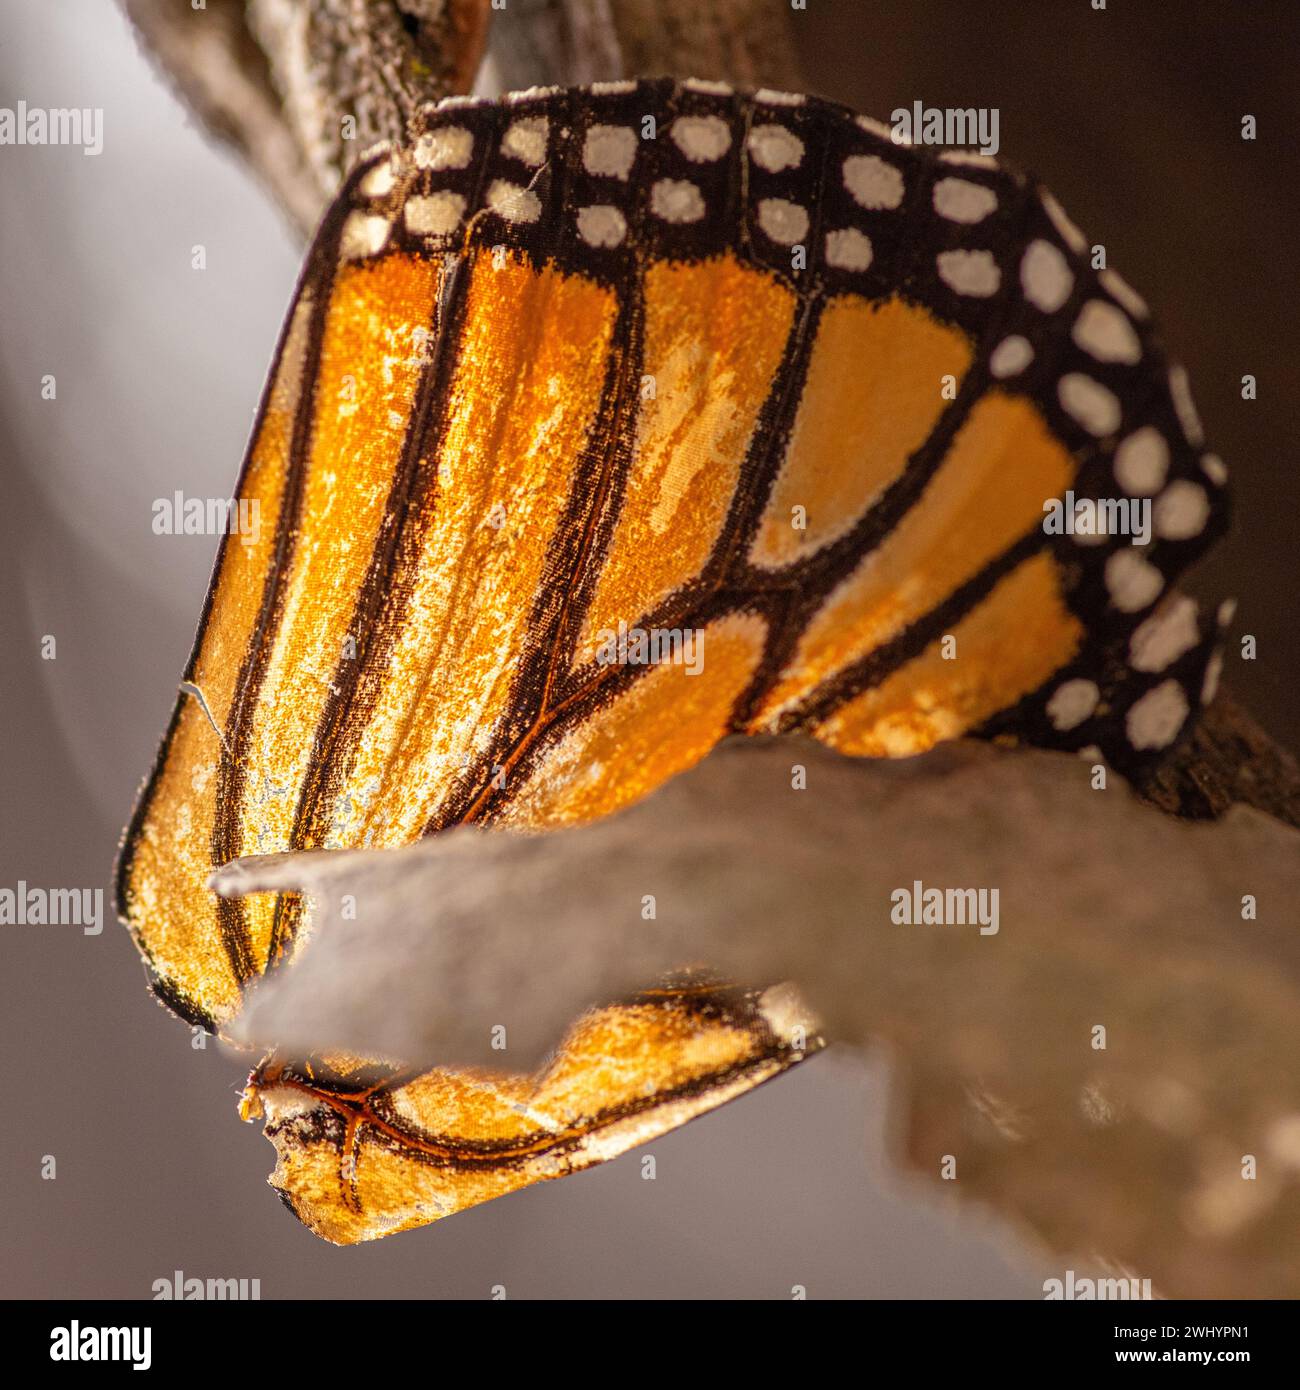 Macro, Monarch Butterfly, Wing, Closeup, dettaglio, arancione, nero, bianco, contrasti, bilance a farfalla, primi piani estremi, Macro Photography Foto Stock